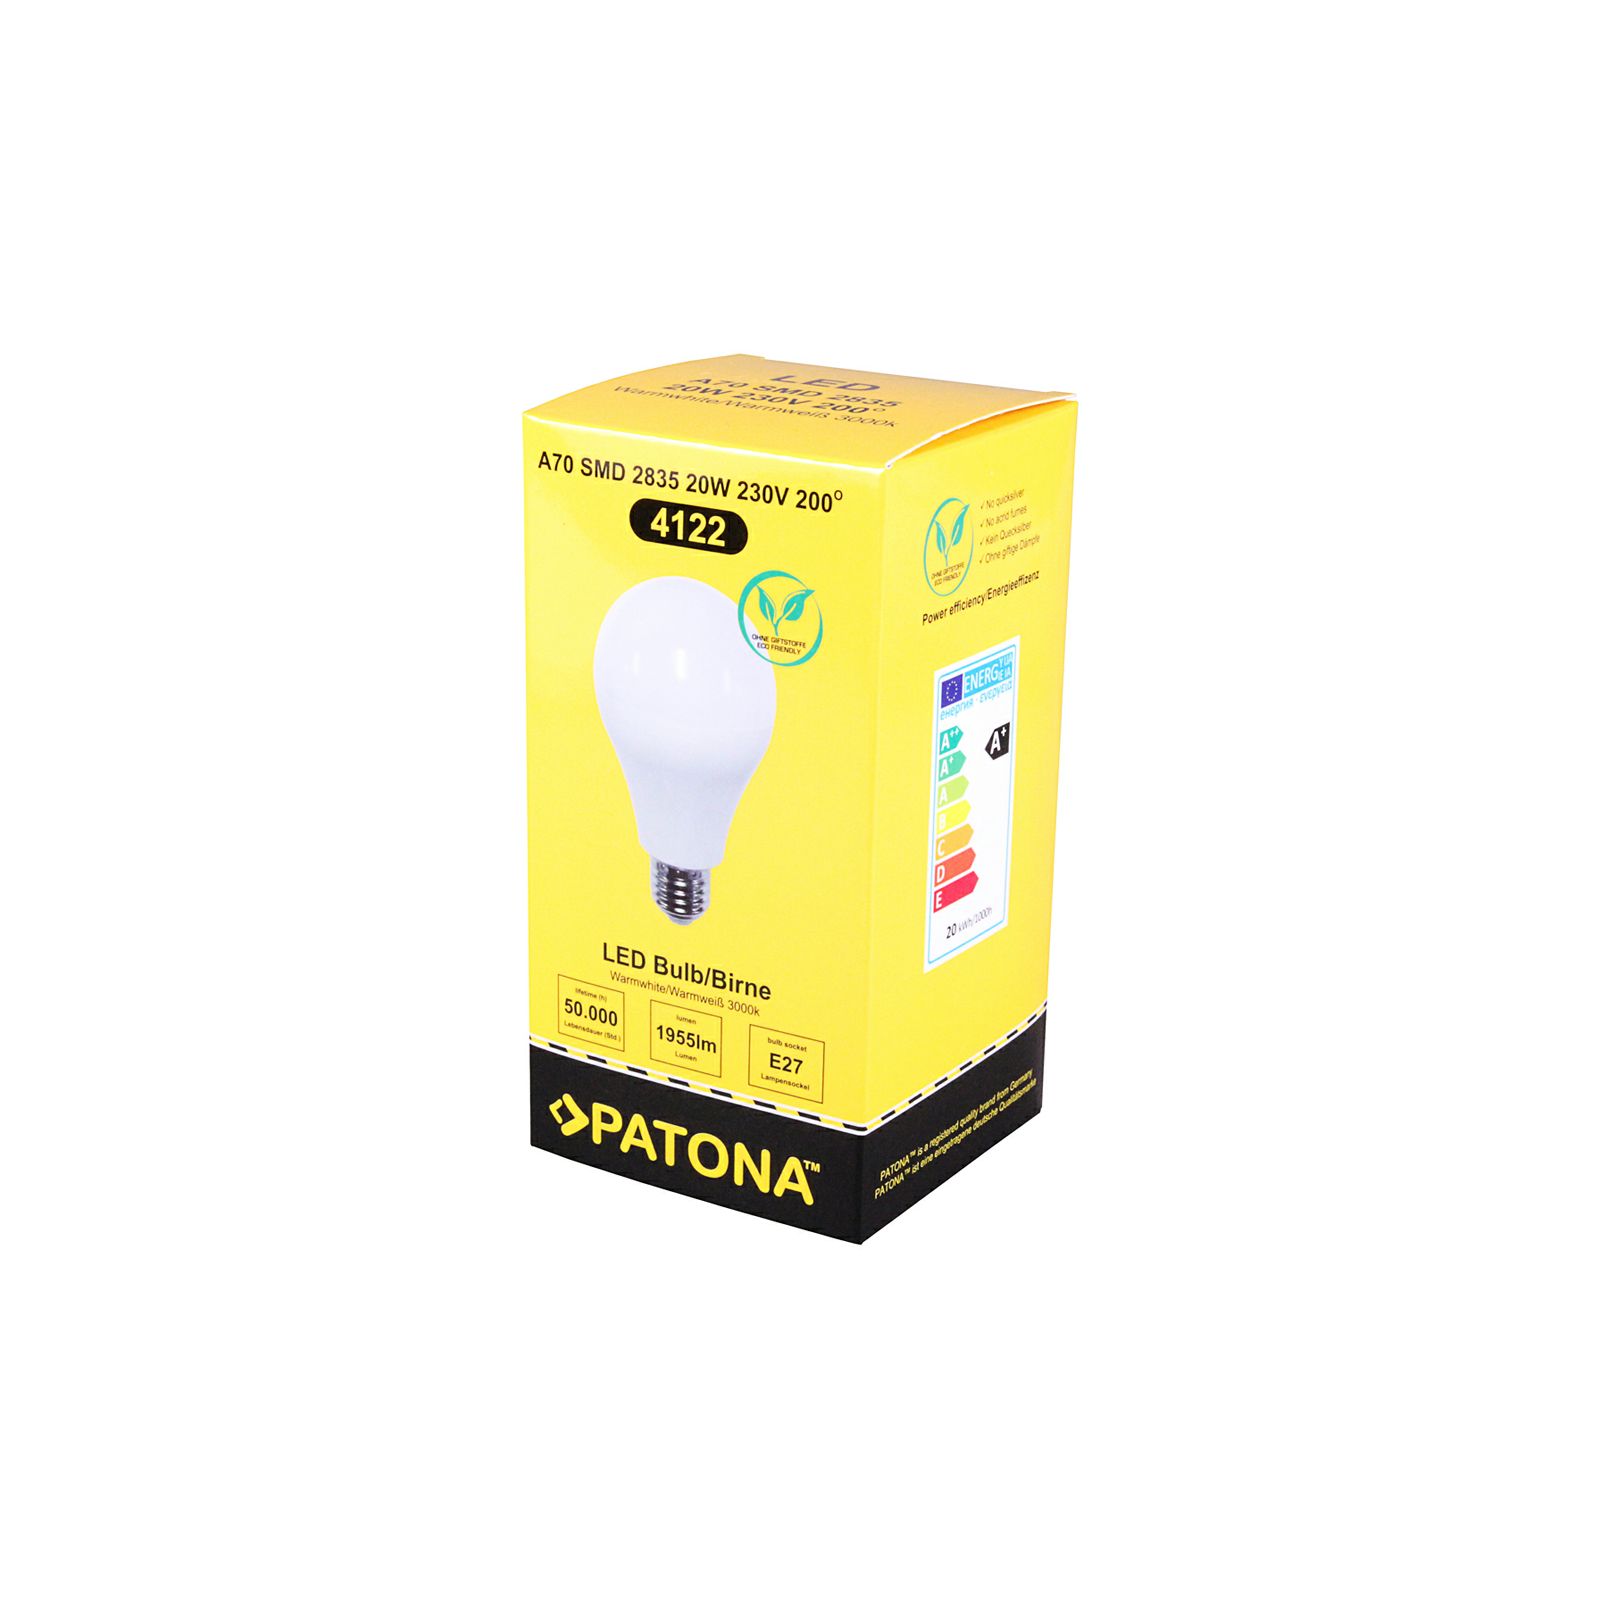 Patona LED E27 SMD 2835 20W 70x127mm 1955lm 3000K 230V/50-60Hz A+ warmwhite milkcover ceramic body